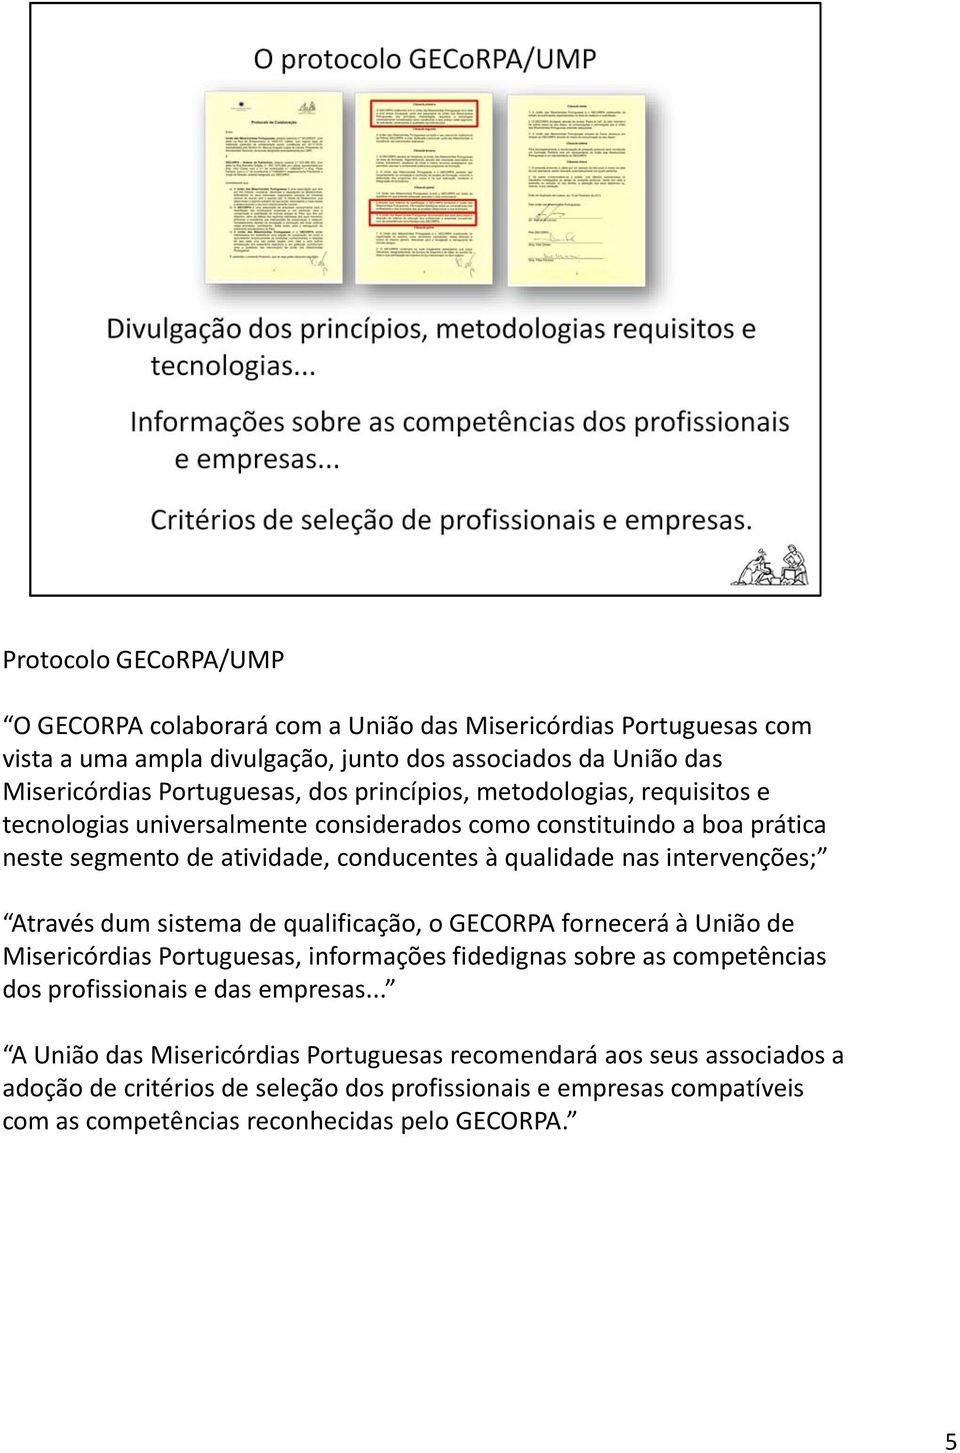 Através dum sistema de qualificação, o GECORPA fornecerá à União de Misericórdias Portuguesas, informações fidedignas sobre as competências dos profissionais e das empresas.